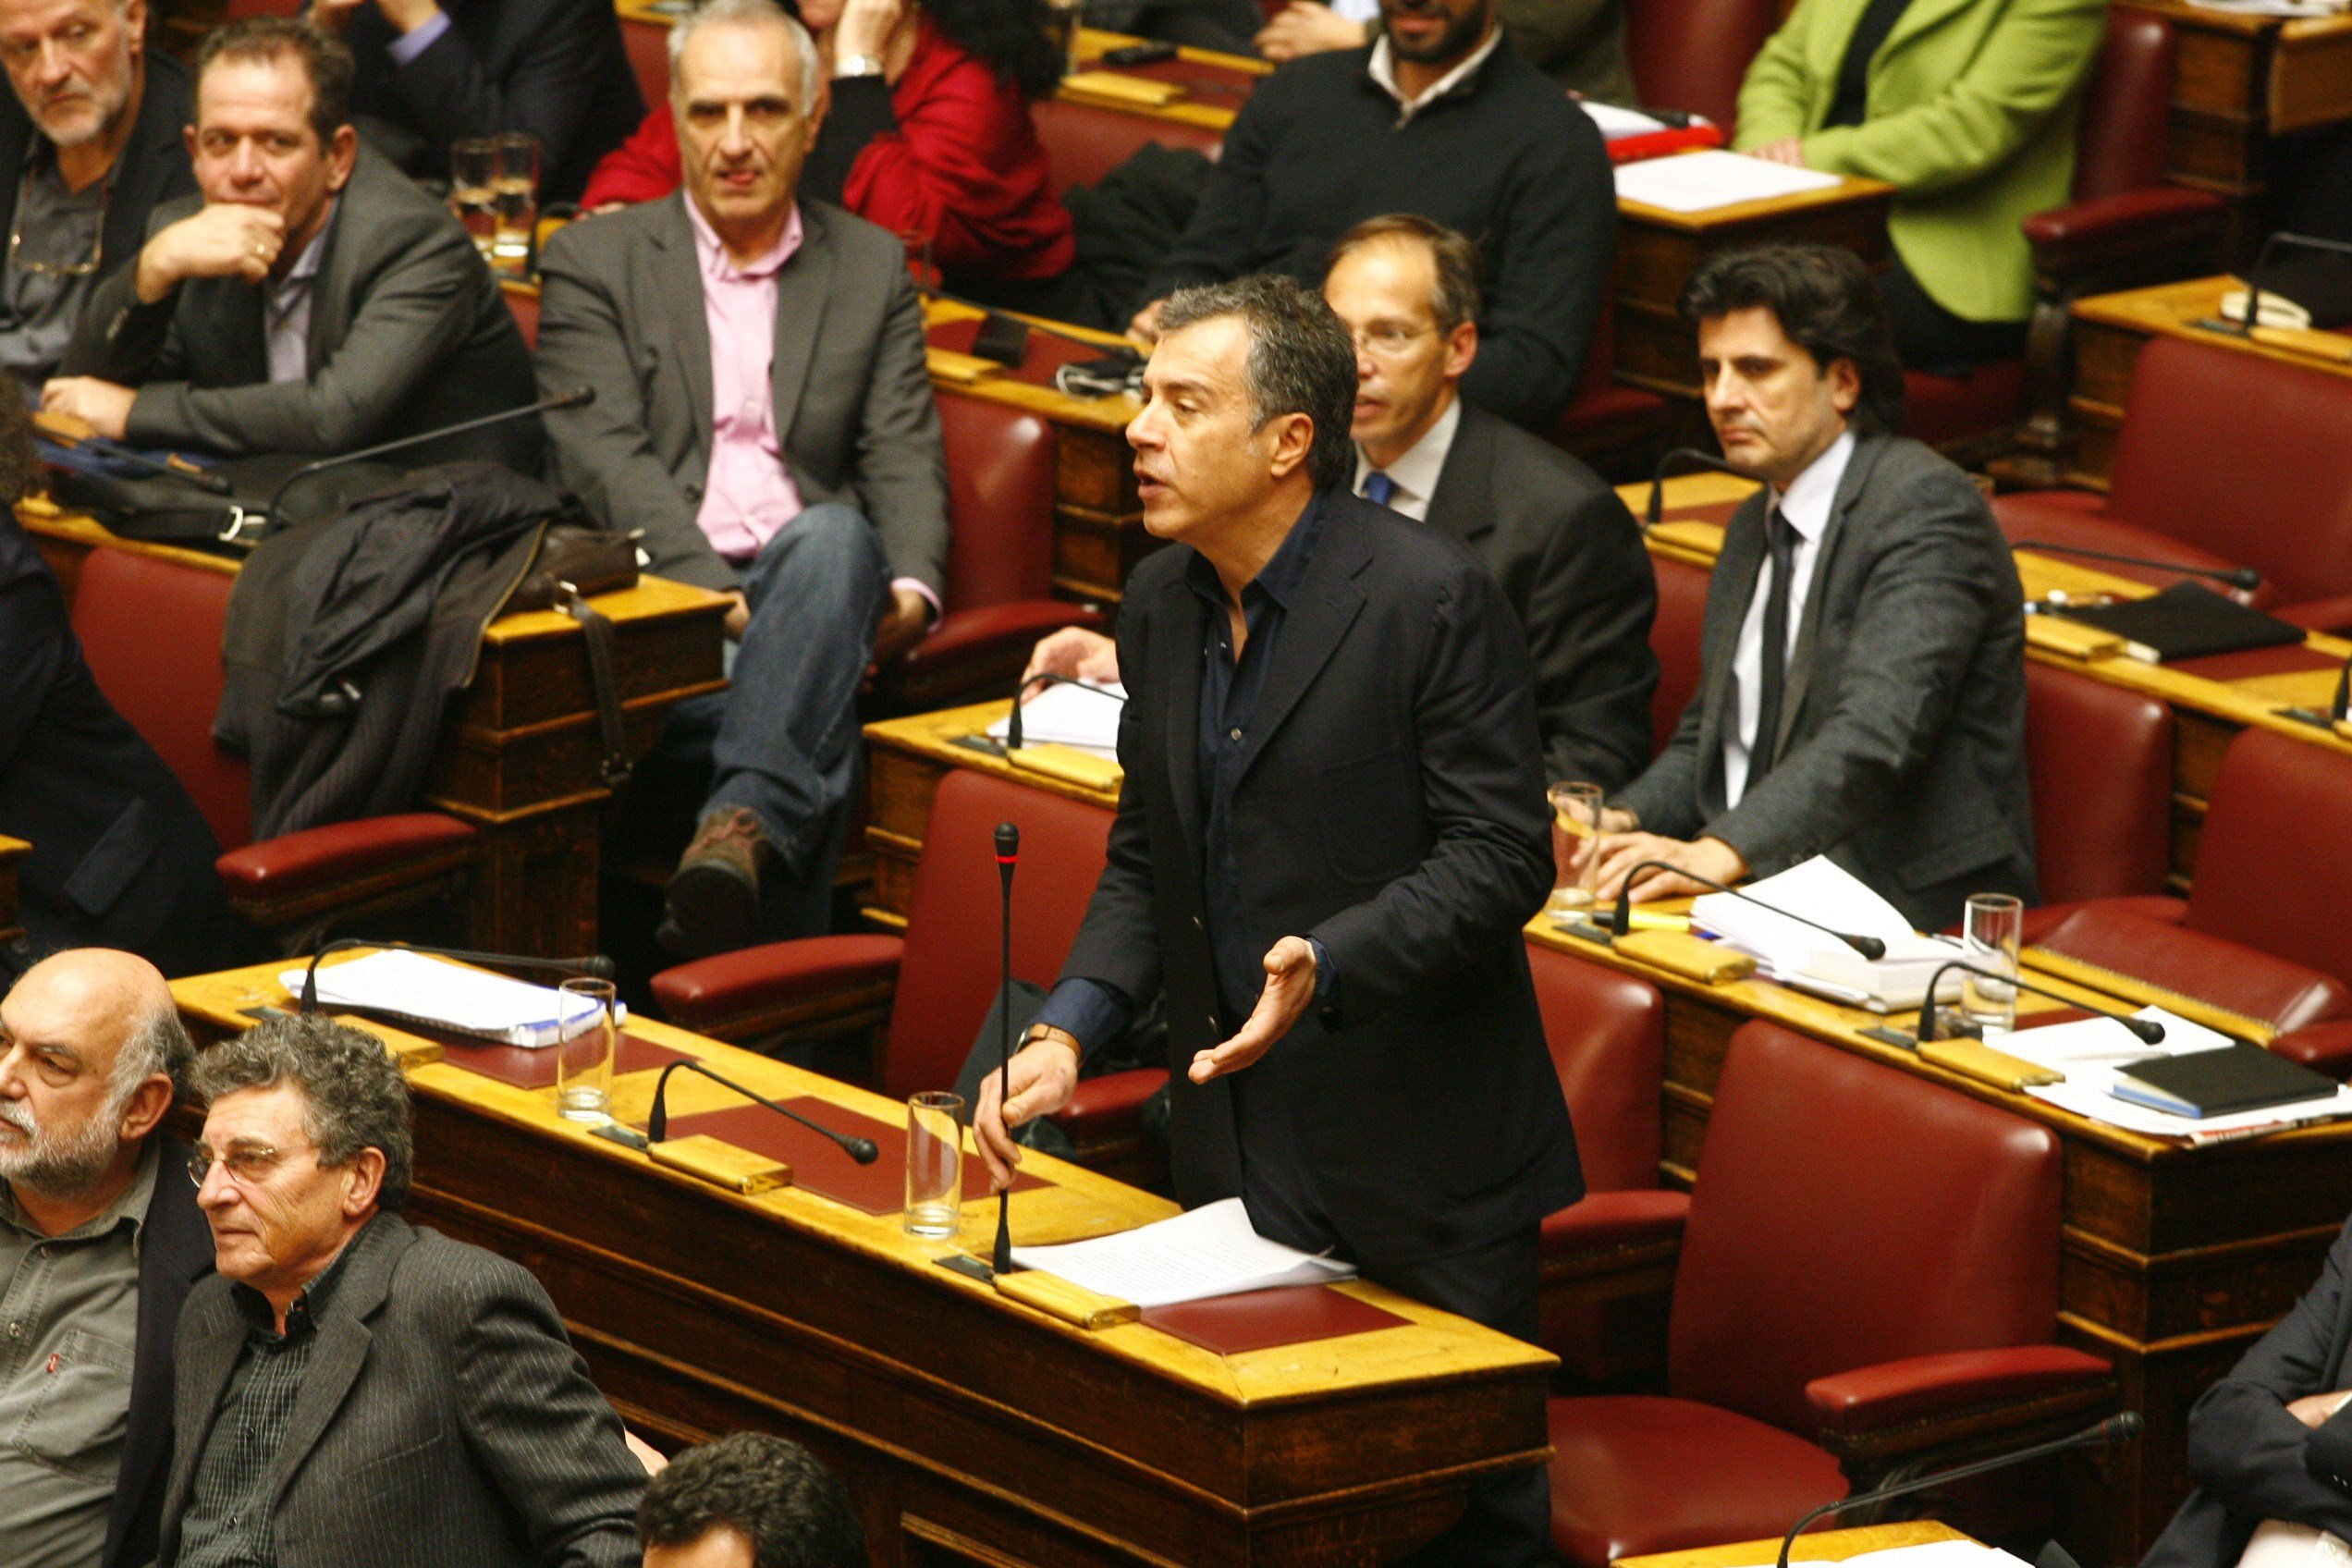 Θεοδωράκης: Κοινοβουλευτική ανωμαλία ο σχηματισμός κυβέρνησης χωρίς το πρώτο κόμμα